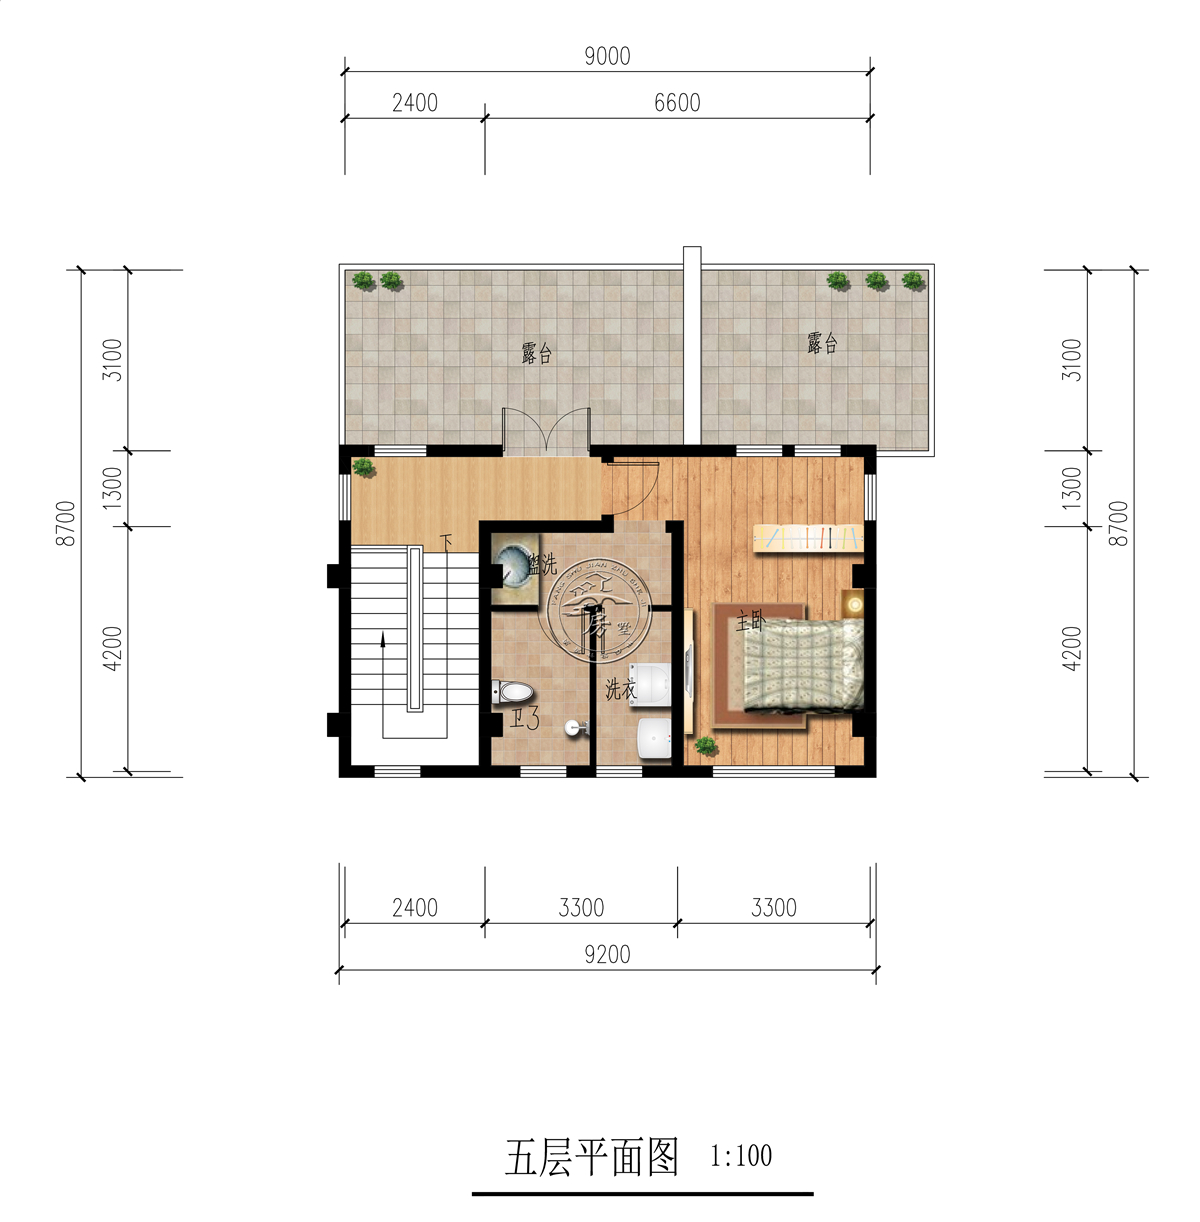 四层平面设计图:卧室套房